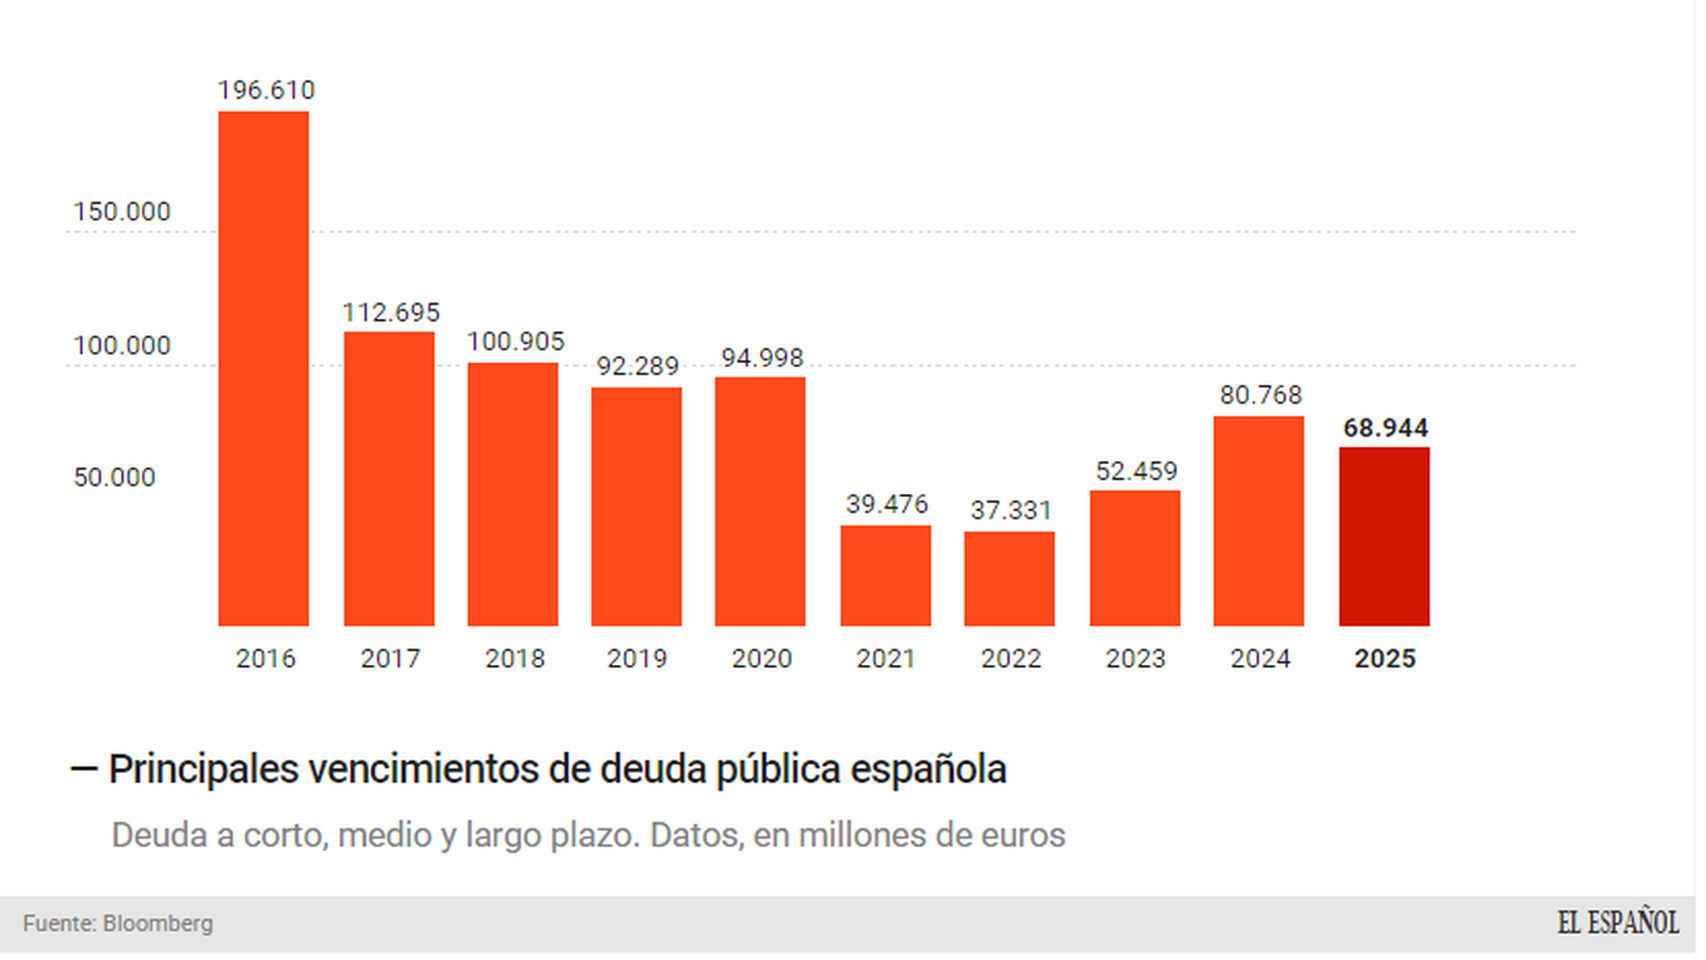 Vencimientos de deuda española.